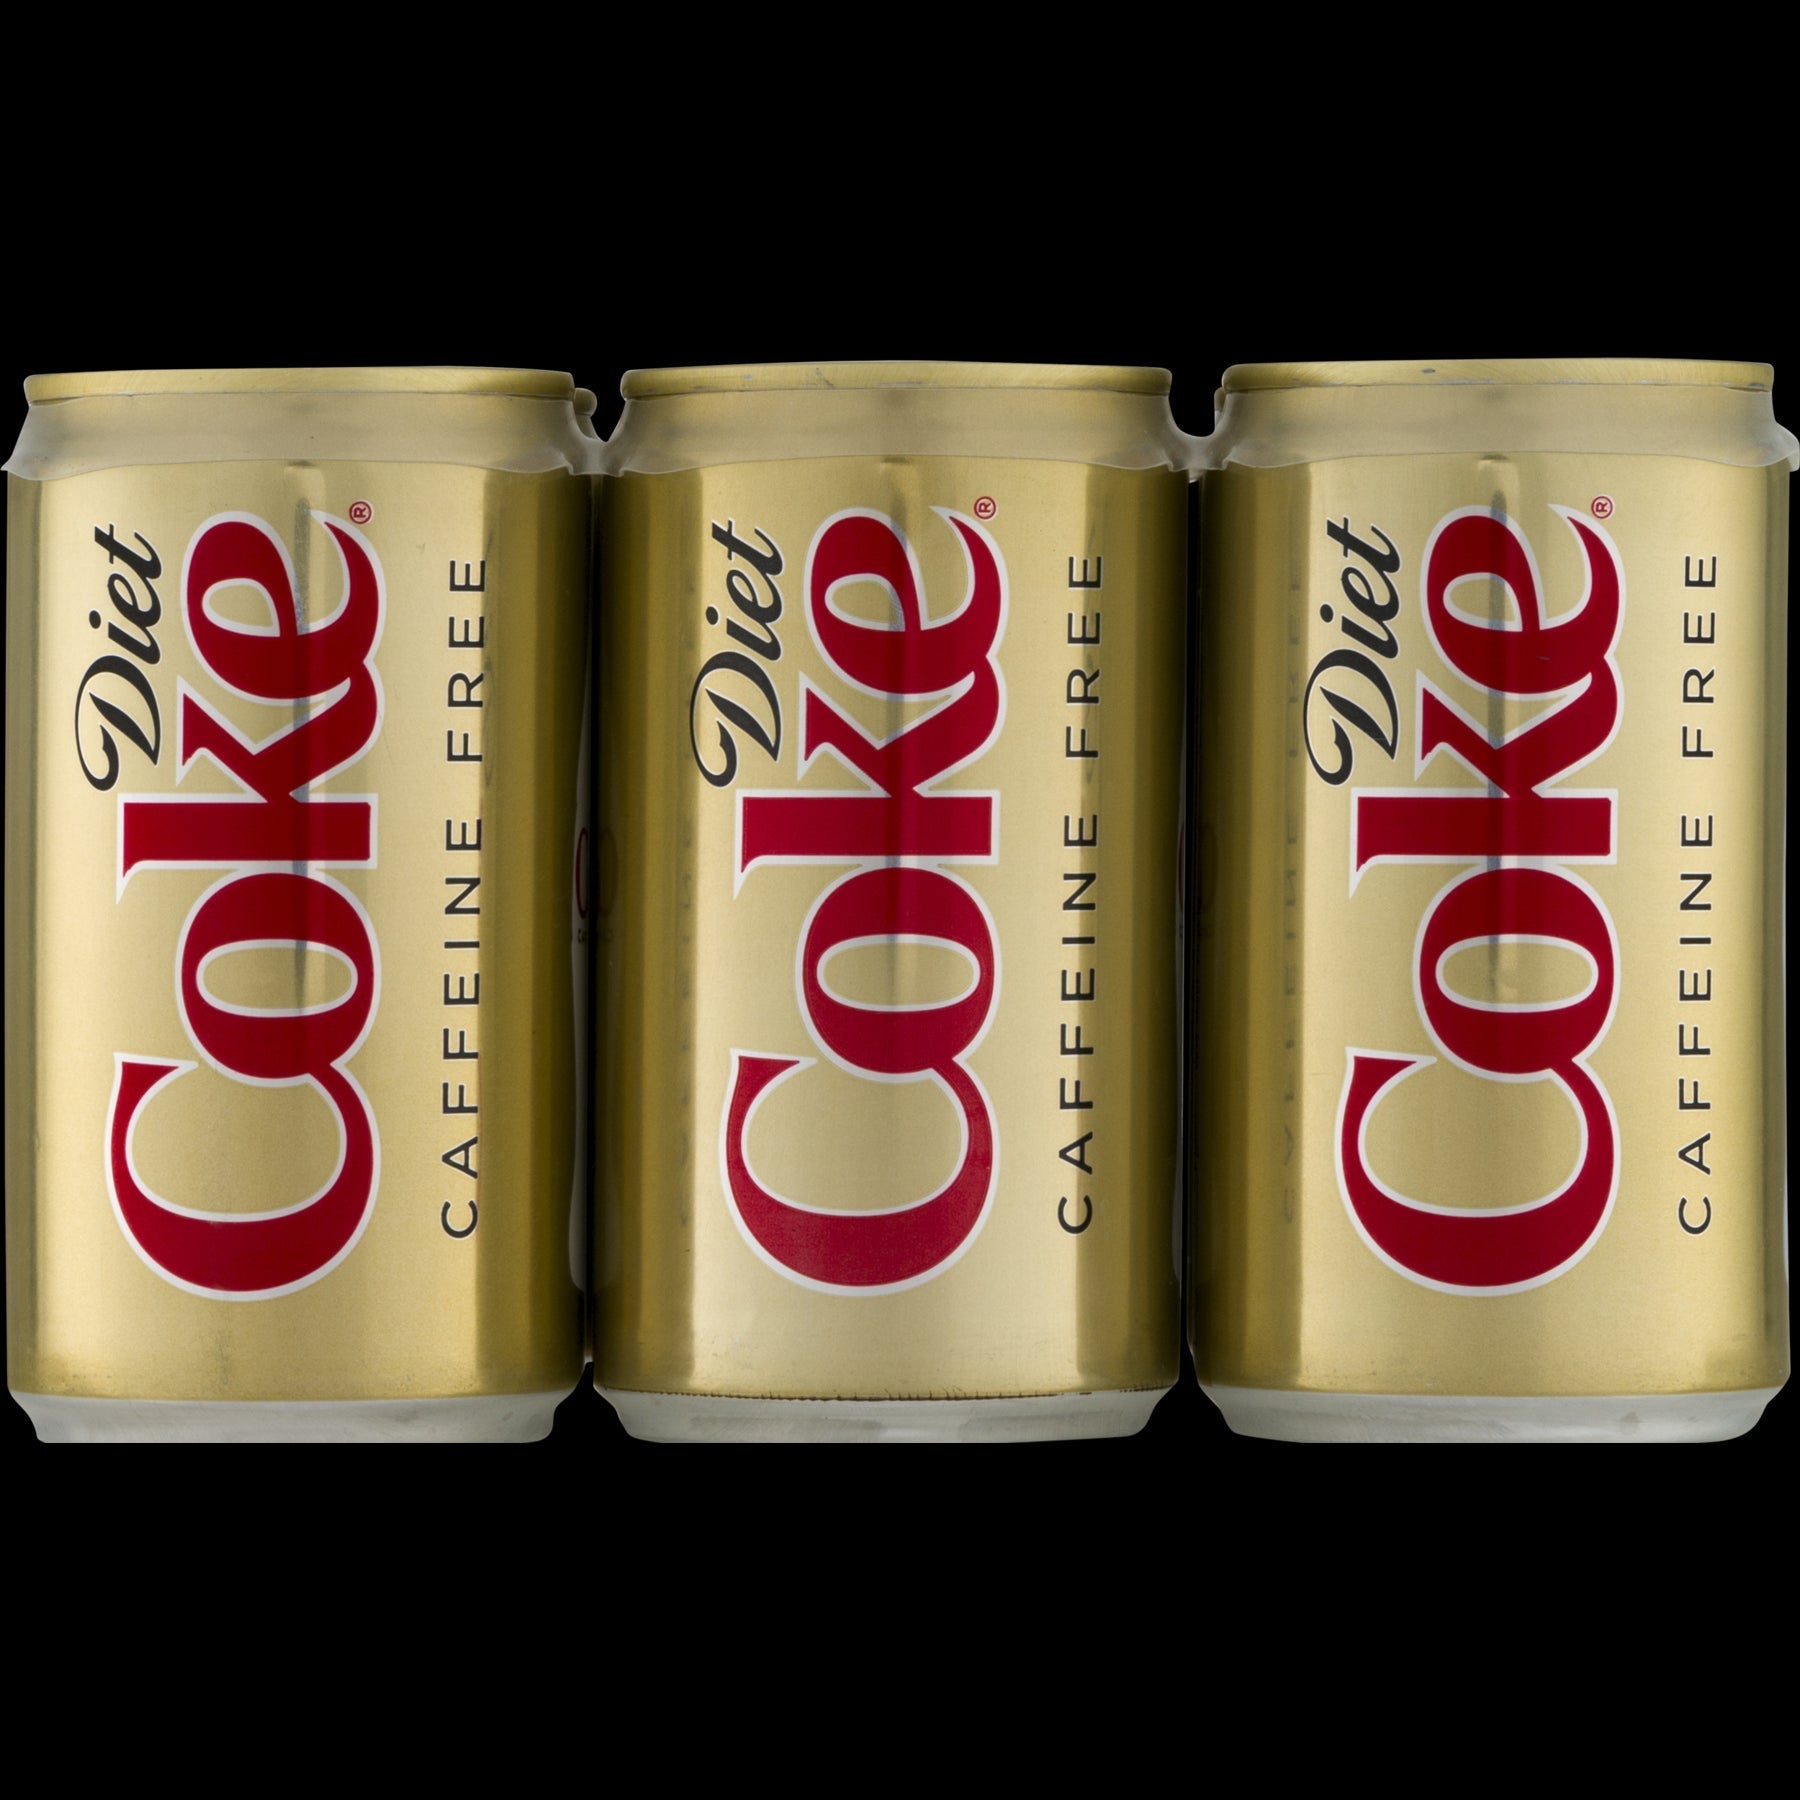 stm>Coke Diet Caffeine-Free, 6 pack